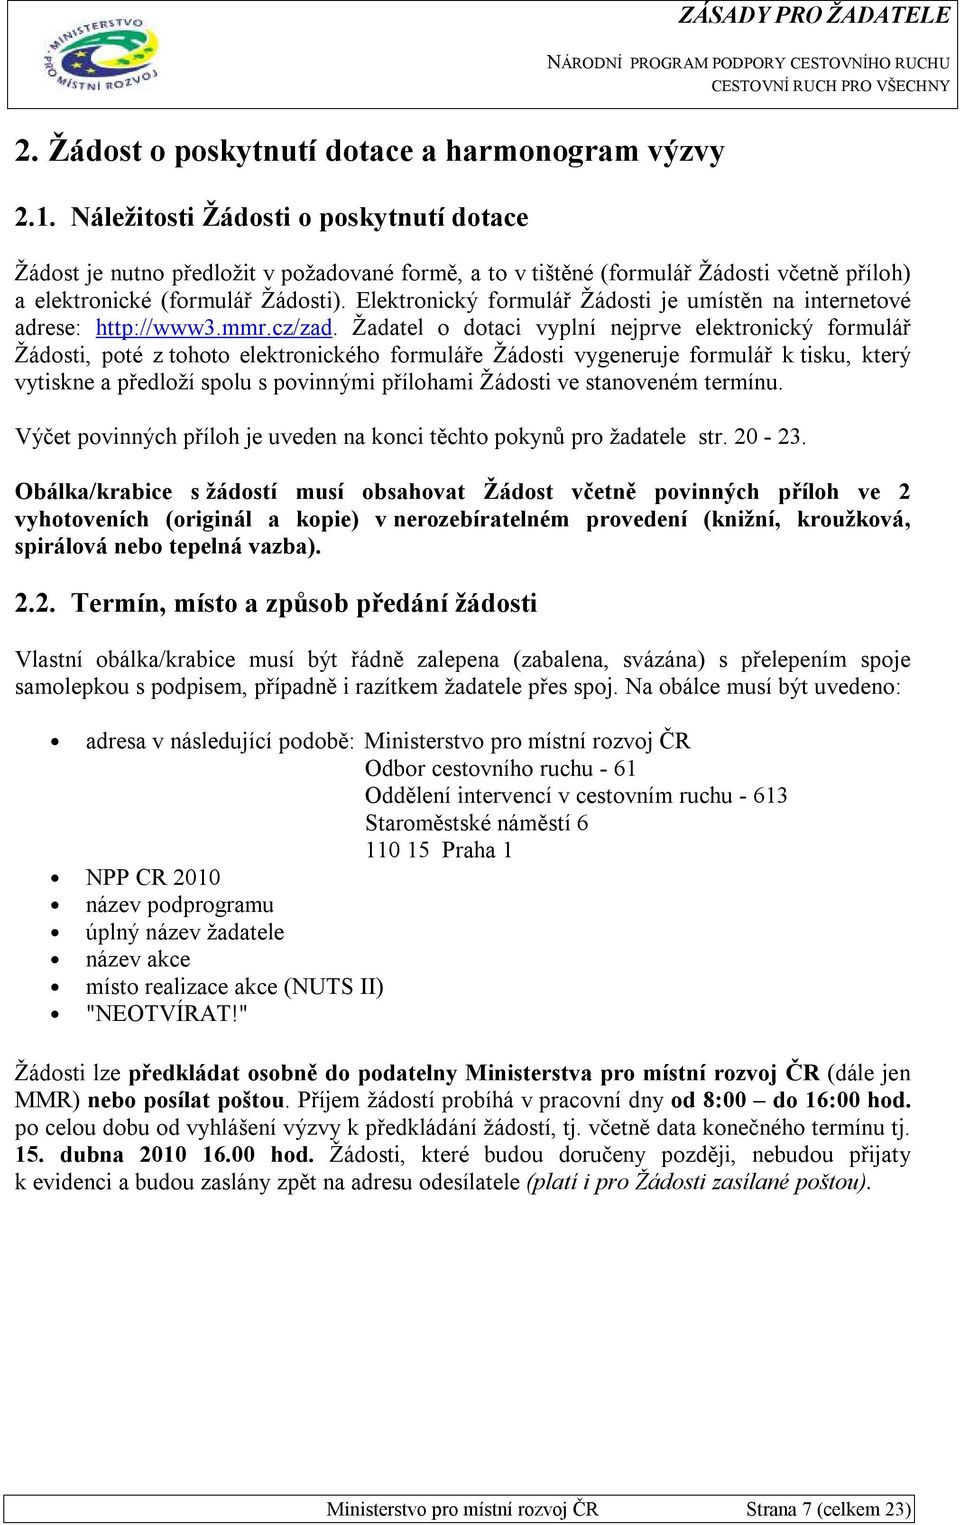 Elektronický formulář Žádosti je umístěn na internetové adrese: http://www3.mmr.cz/zad.